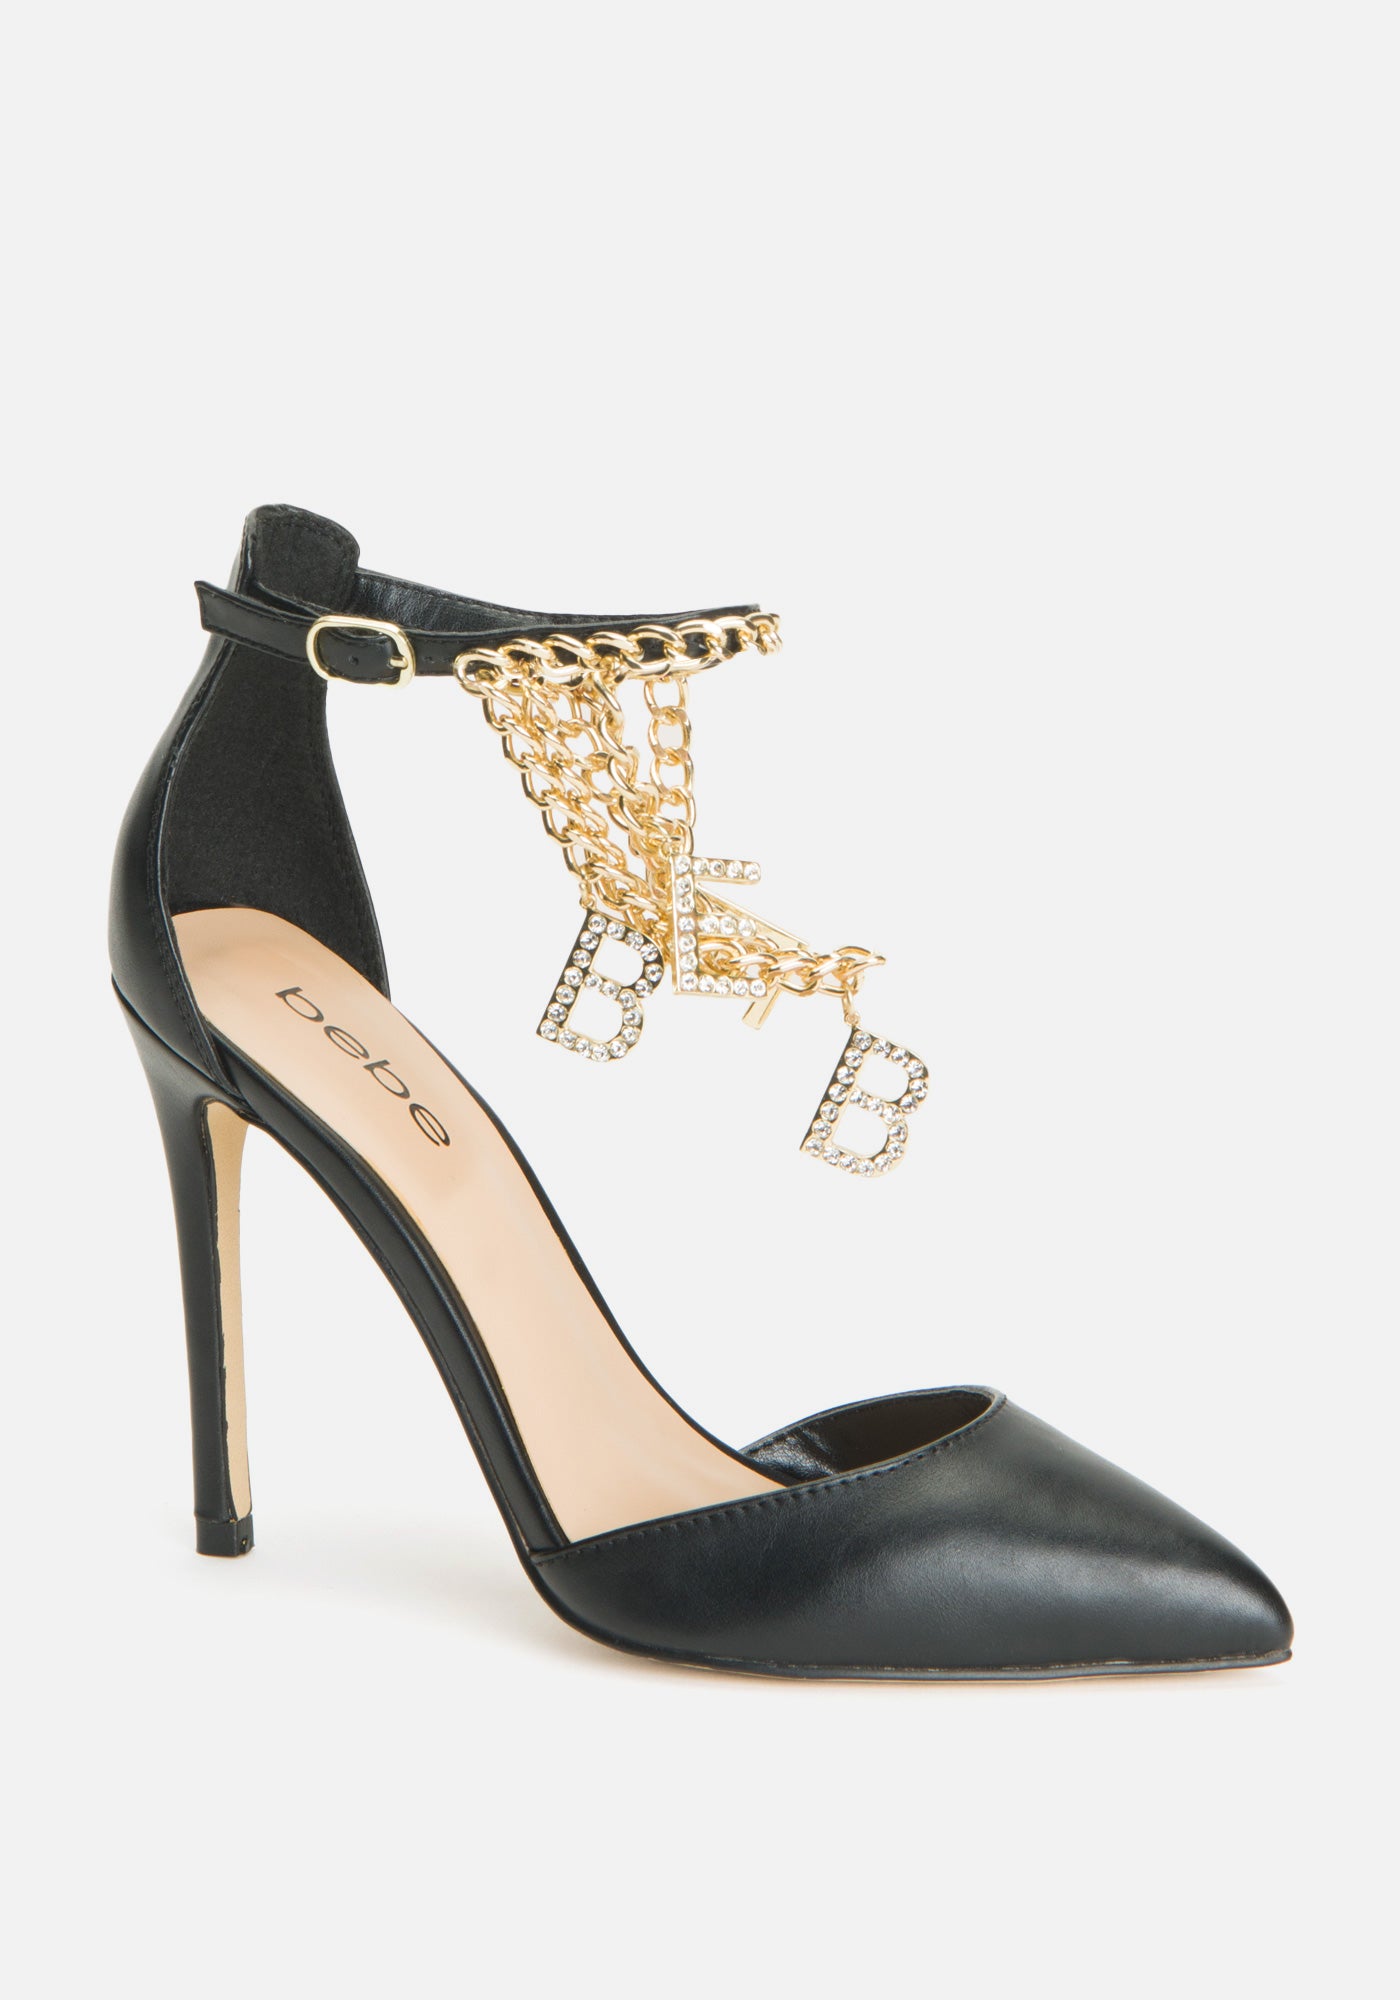 Bebe Women's Decor Ankle Strap Heels Shoe, Size 8.5 in Black Synthetic